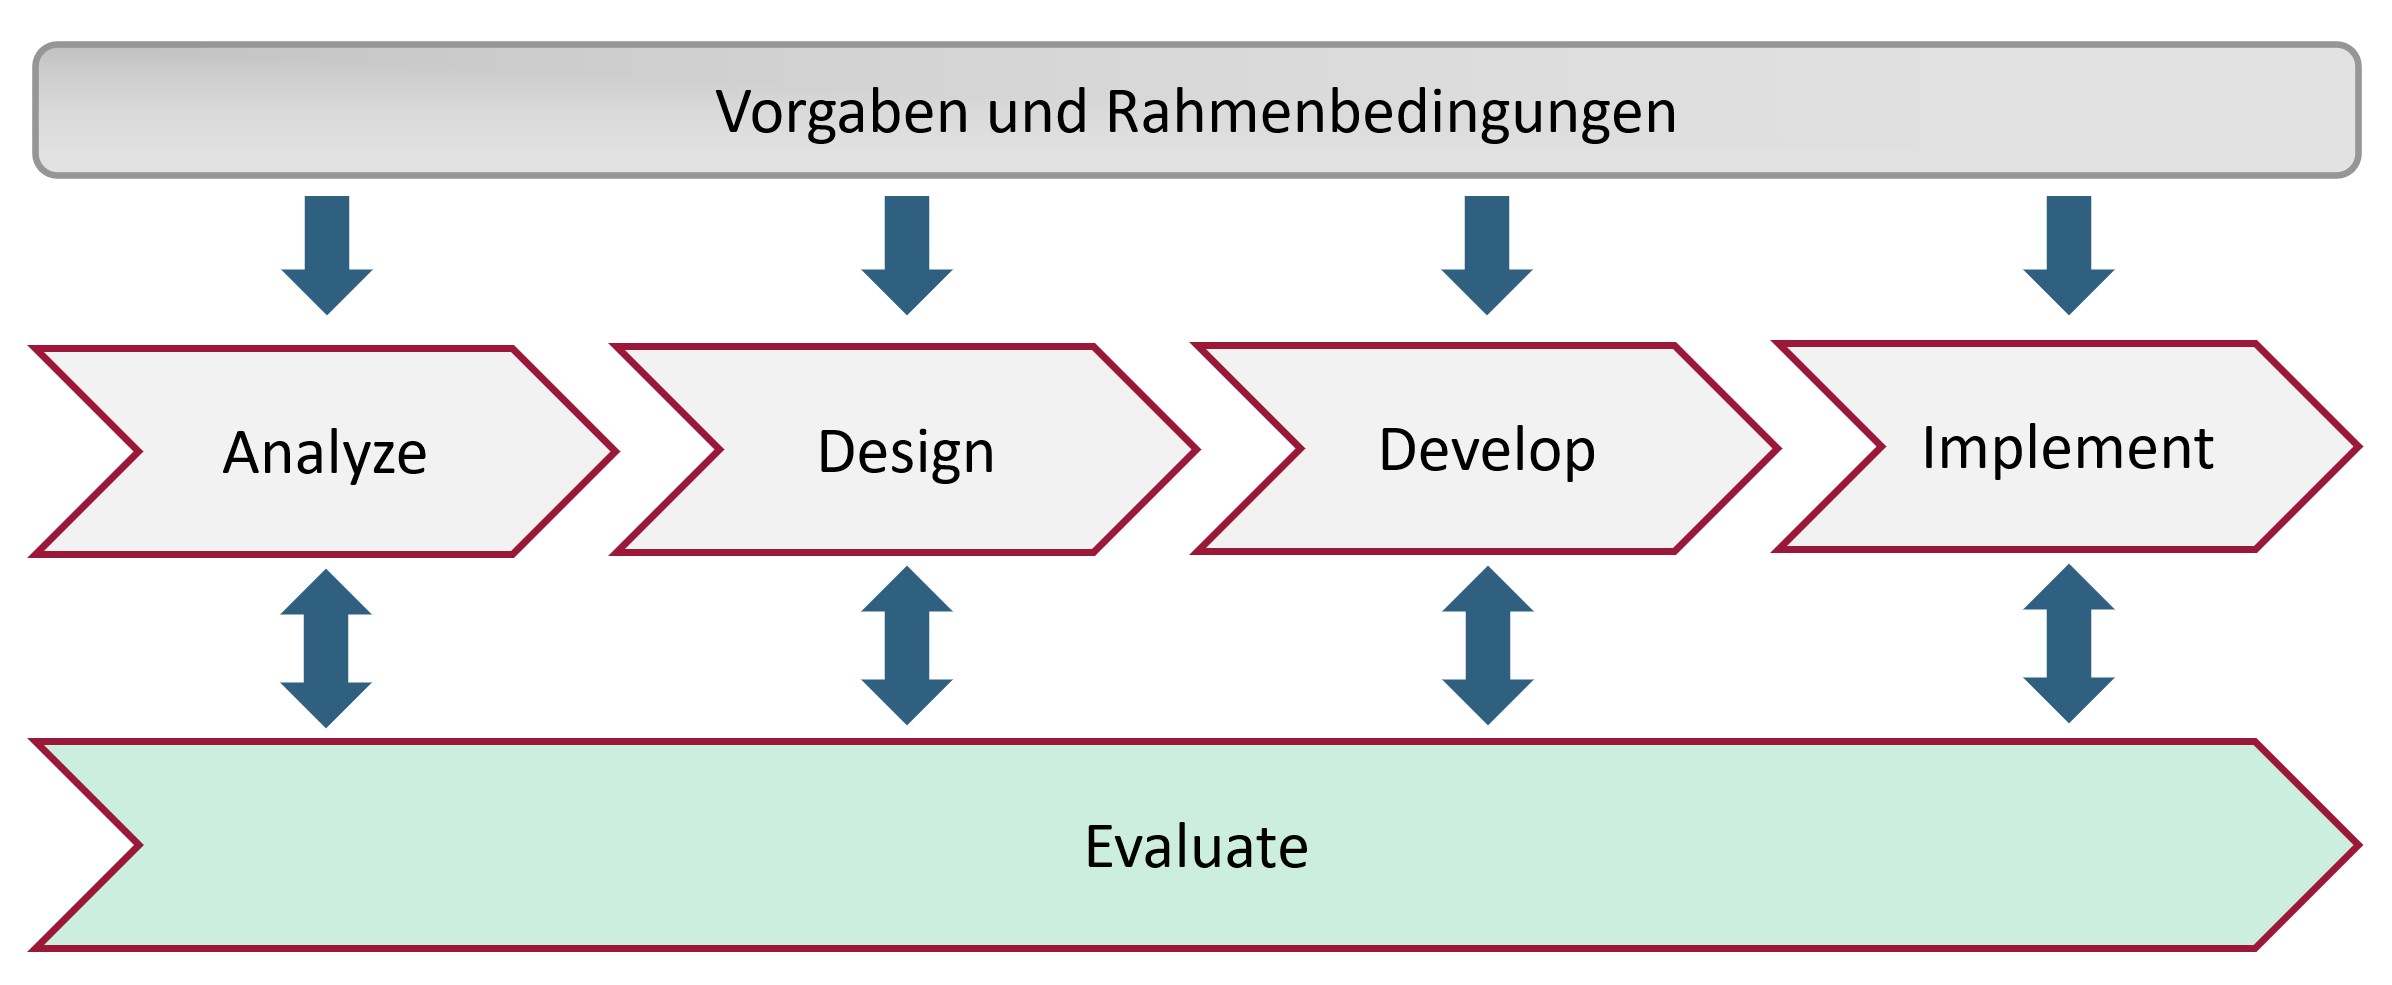 Die Grafik zeigt die aufgezählten Schritte des ADDIE-Modells in Prozessform auf. Der Schritt "Evalua-te" ist parallel zu den anderen vier Schritten dargestellt und mit allen durch Doppelpfeile verbun-den.